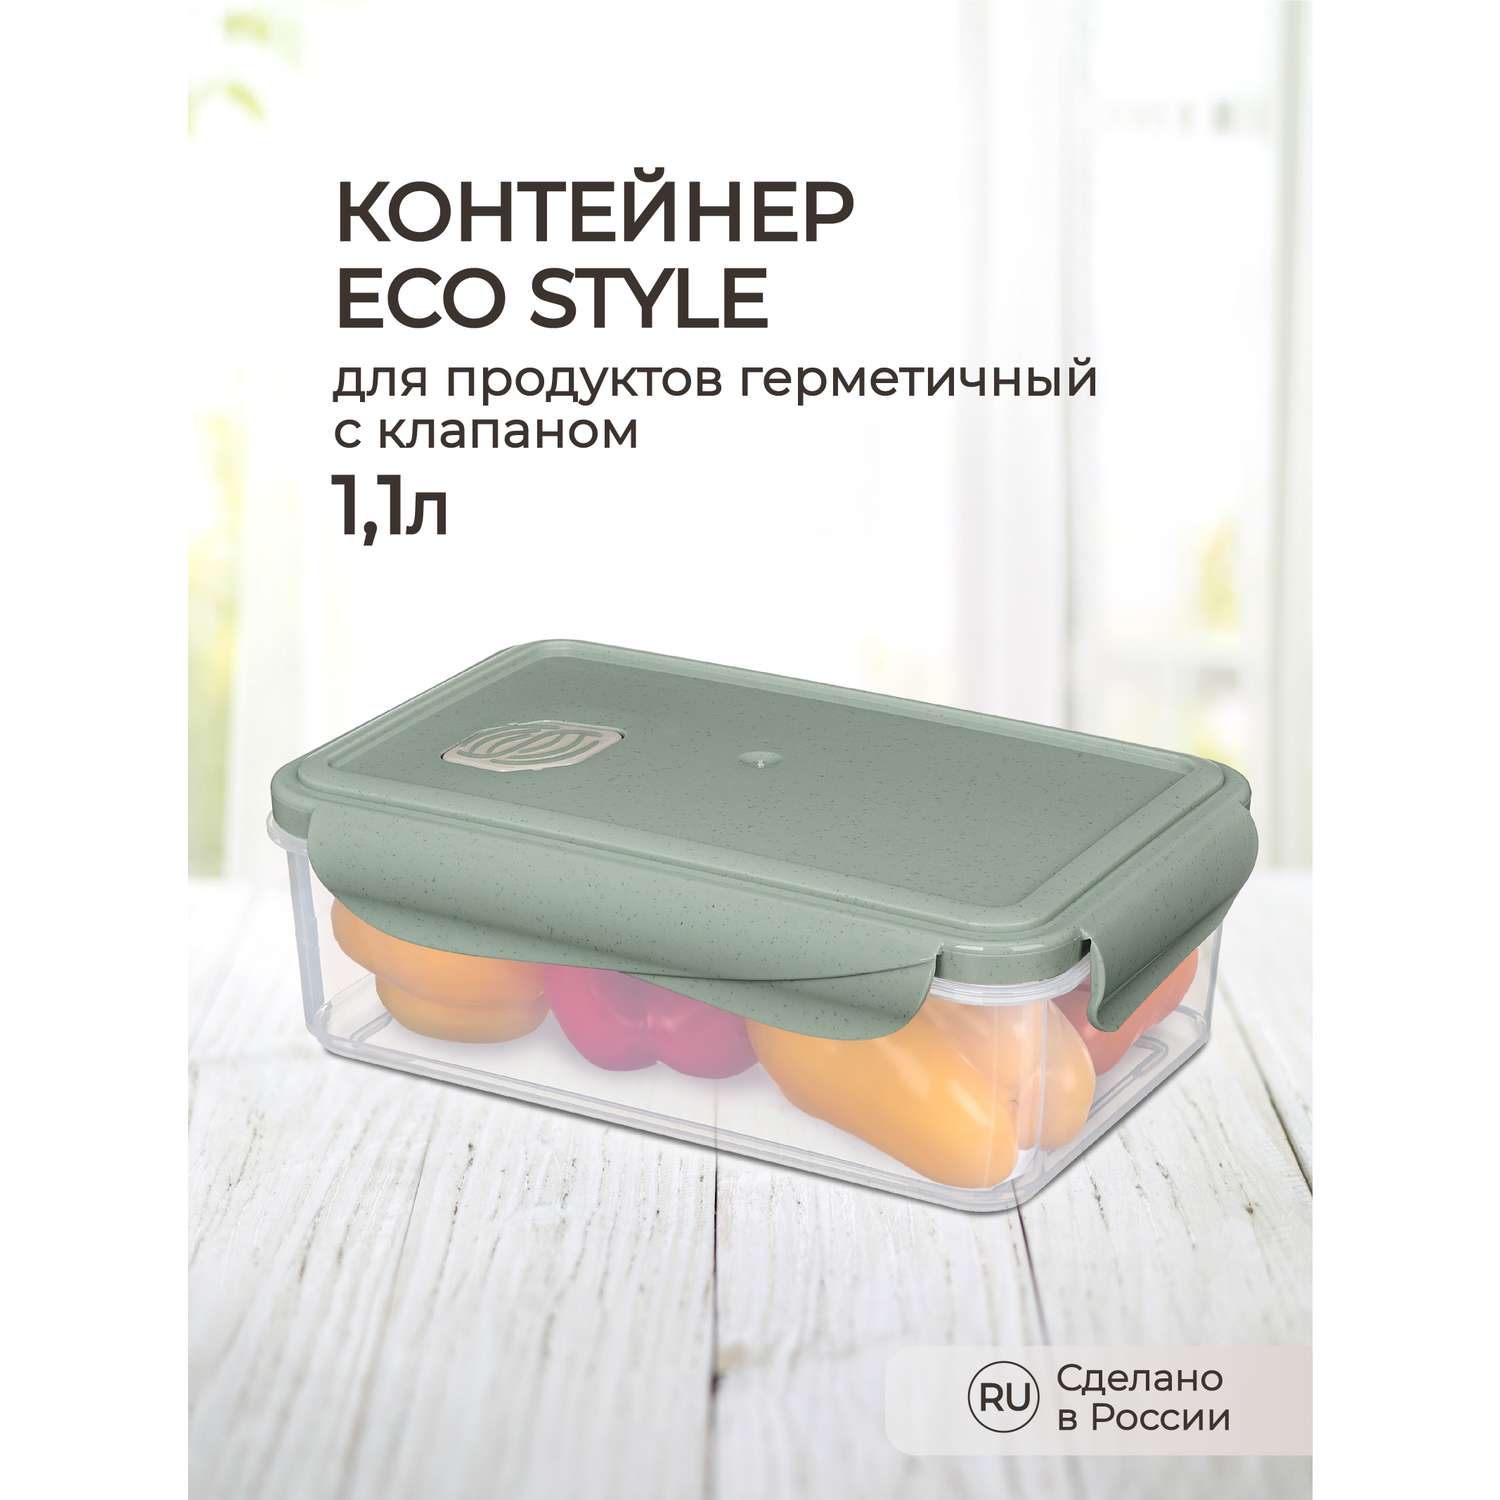 Контейнер Phibo для продуктов герметичный с клапаном Eco Style прямоугольный 1.1л зеленый флэк - фото 1